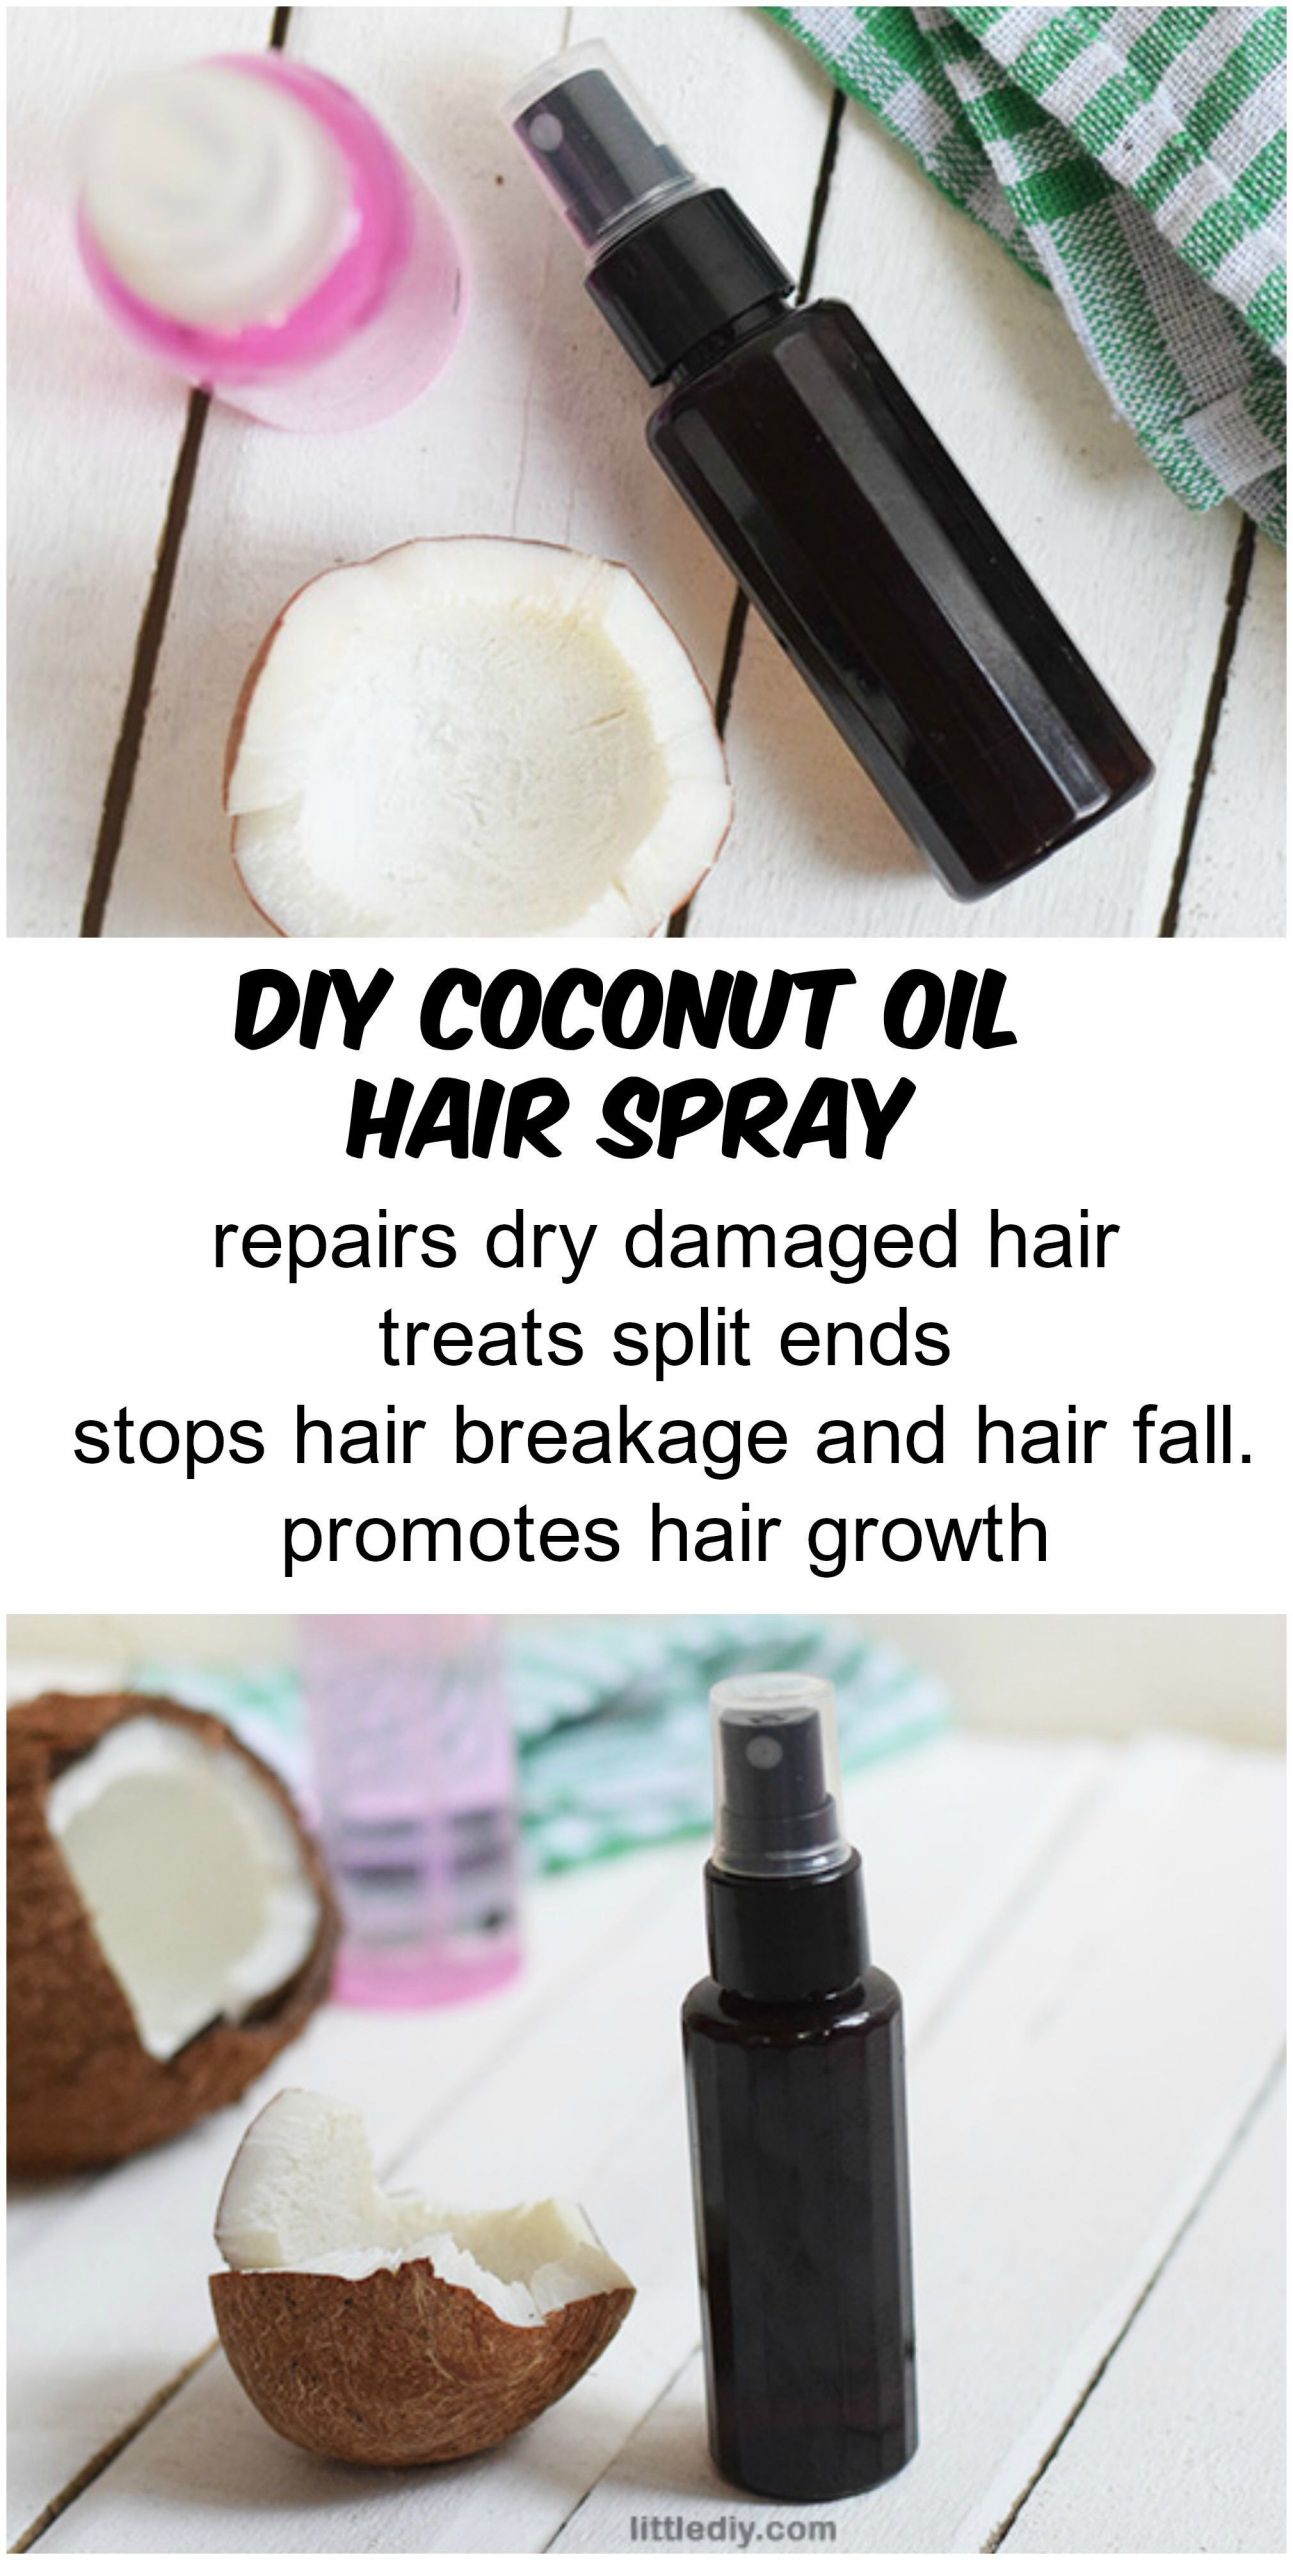 DIY Coconut Oil Hair Spray
 COCONUT OIL HAIR SPRAY Crowning Glory